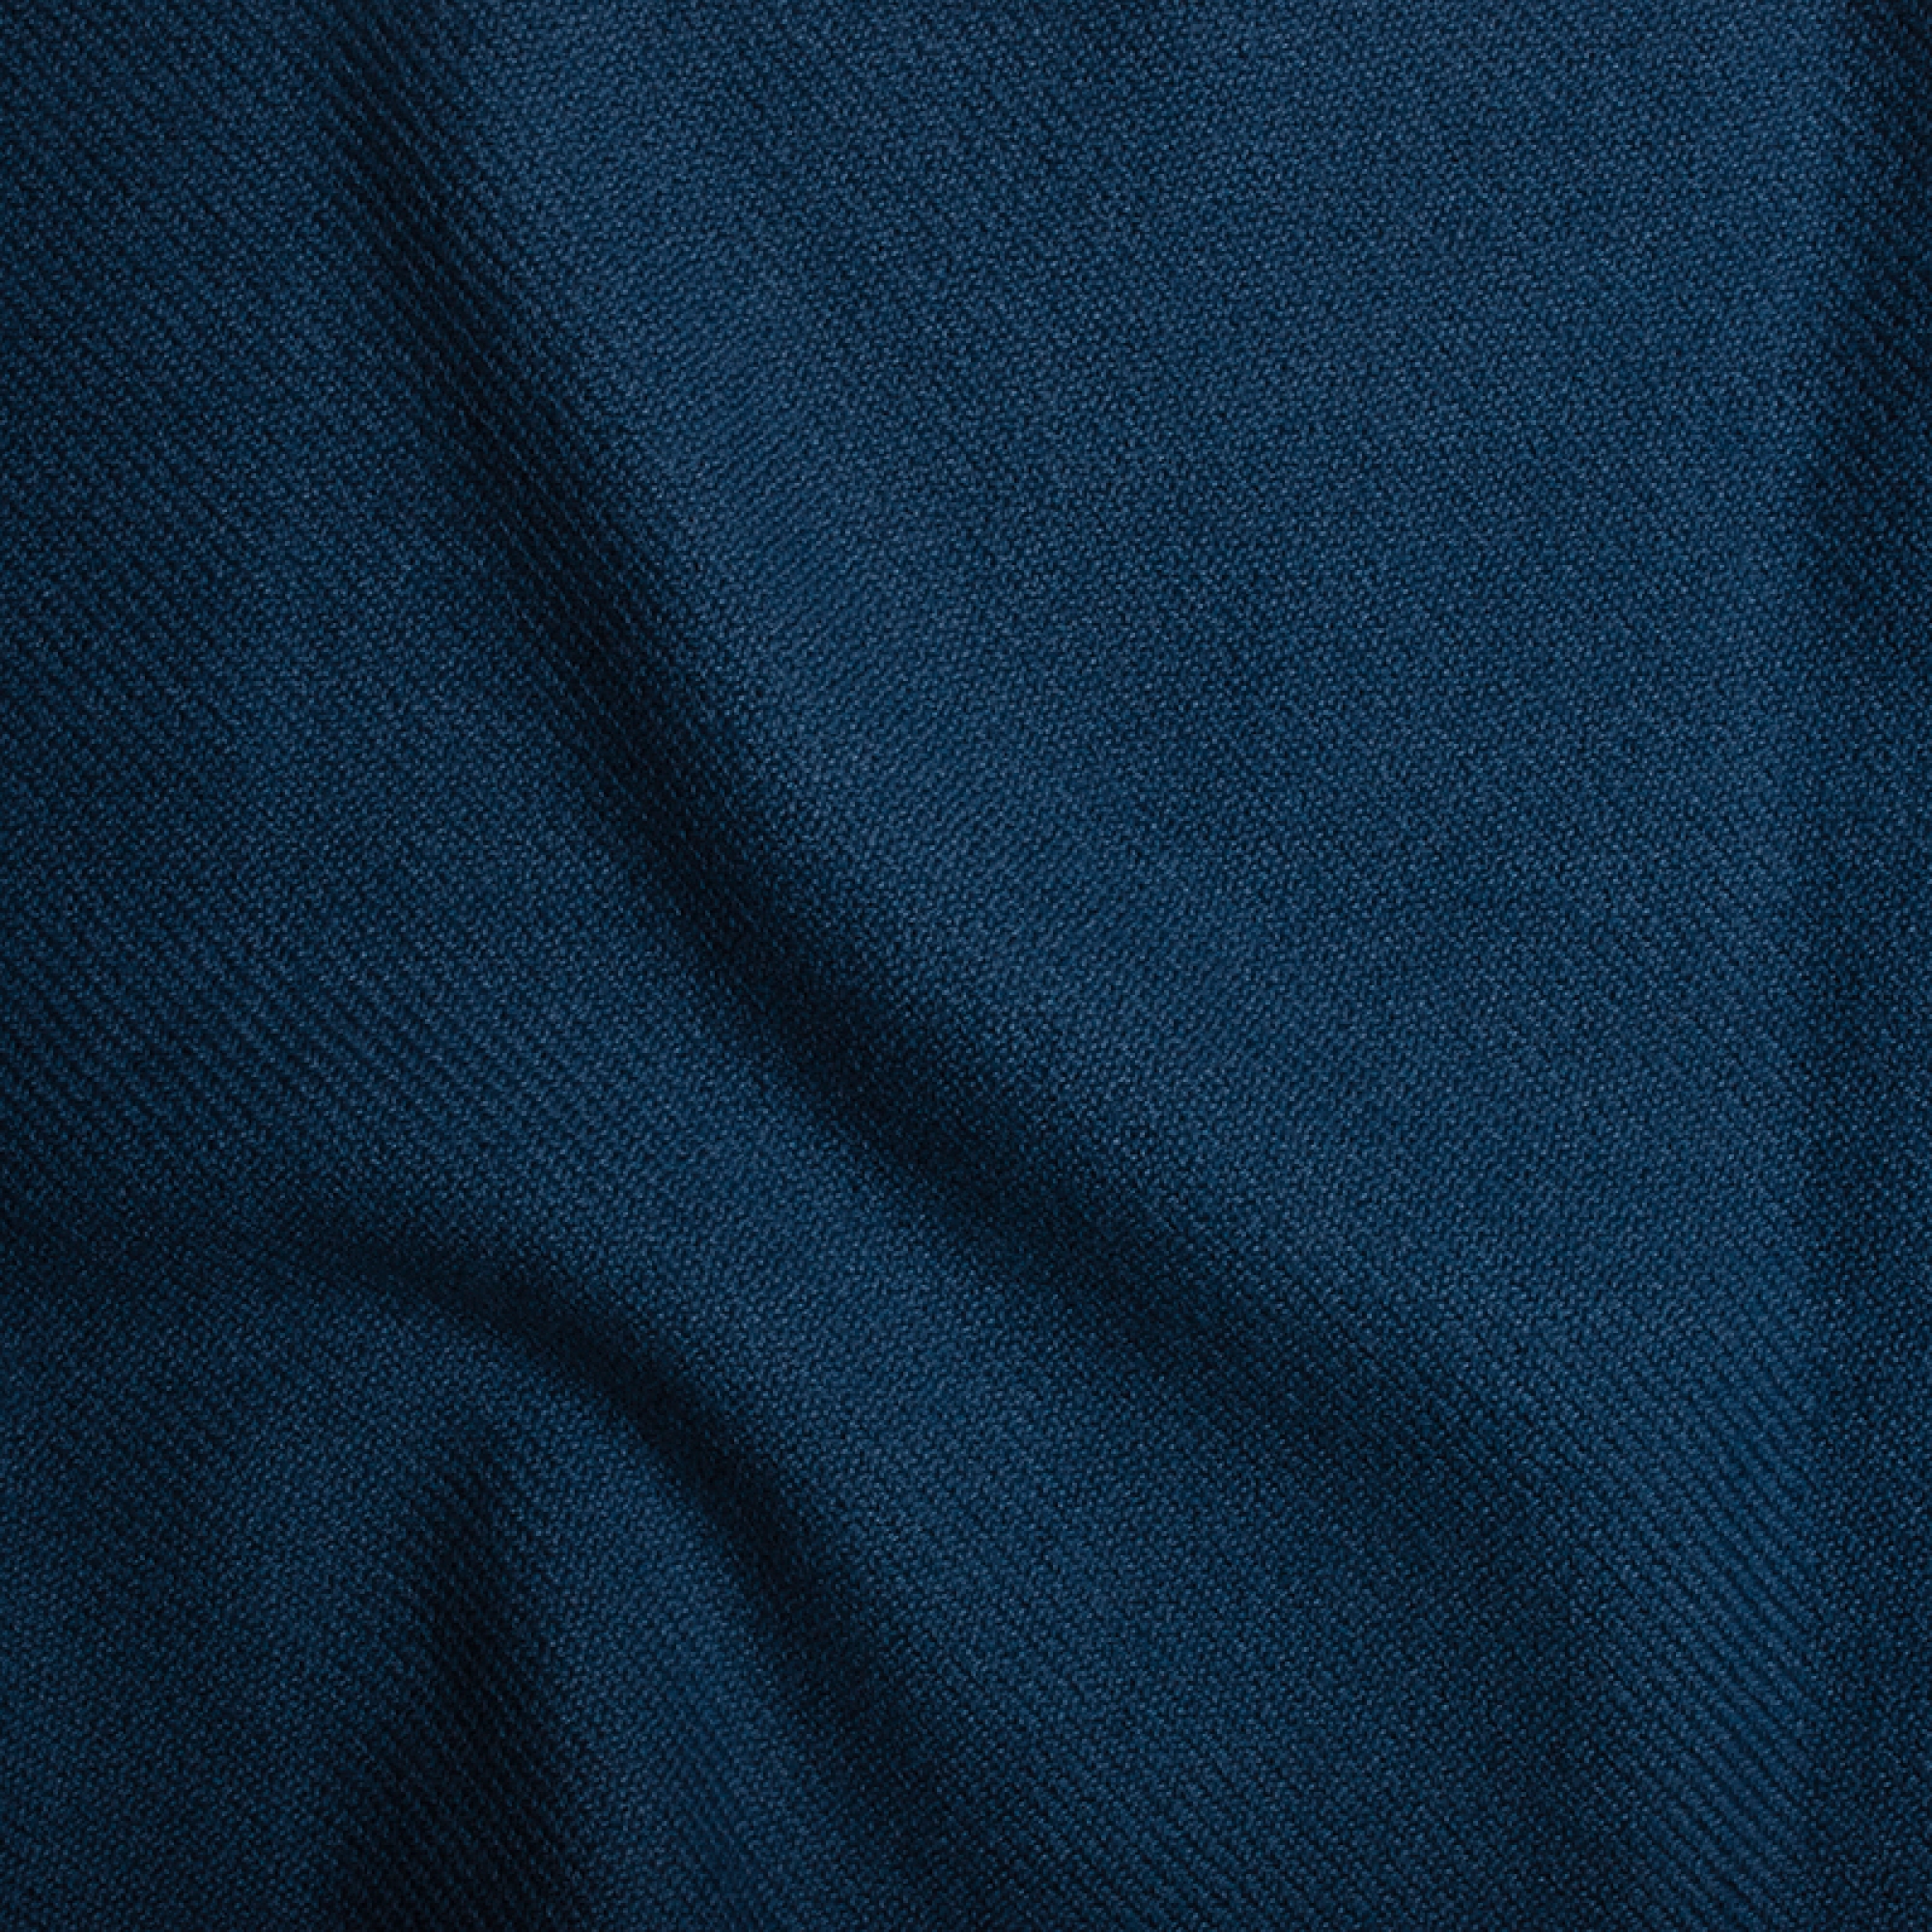 Cachemire interieur femme toodoo plain l 220 x 220 bleu prusse 220x220cm